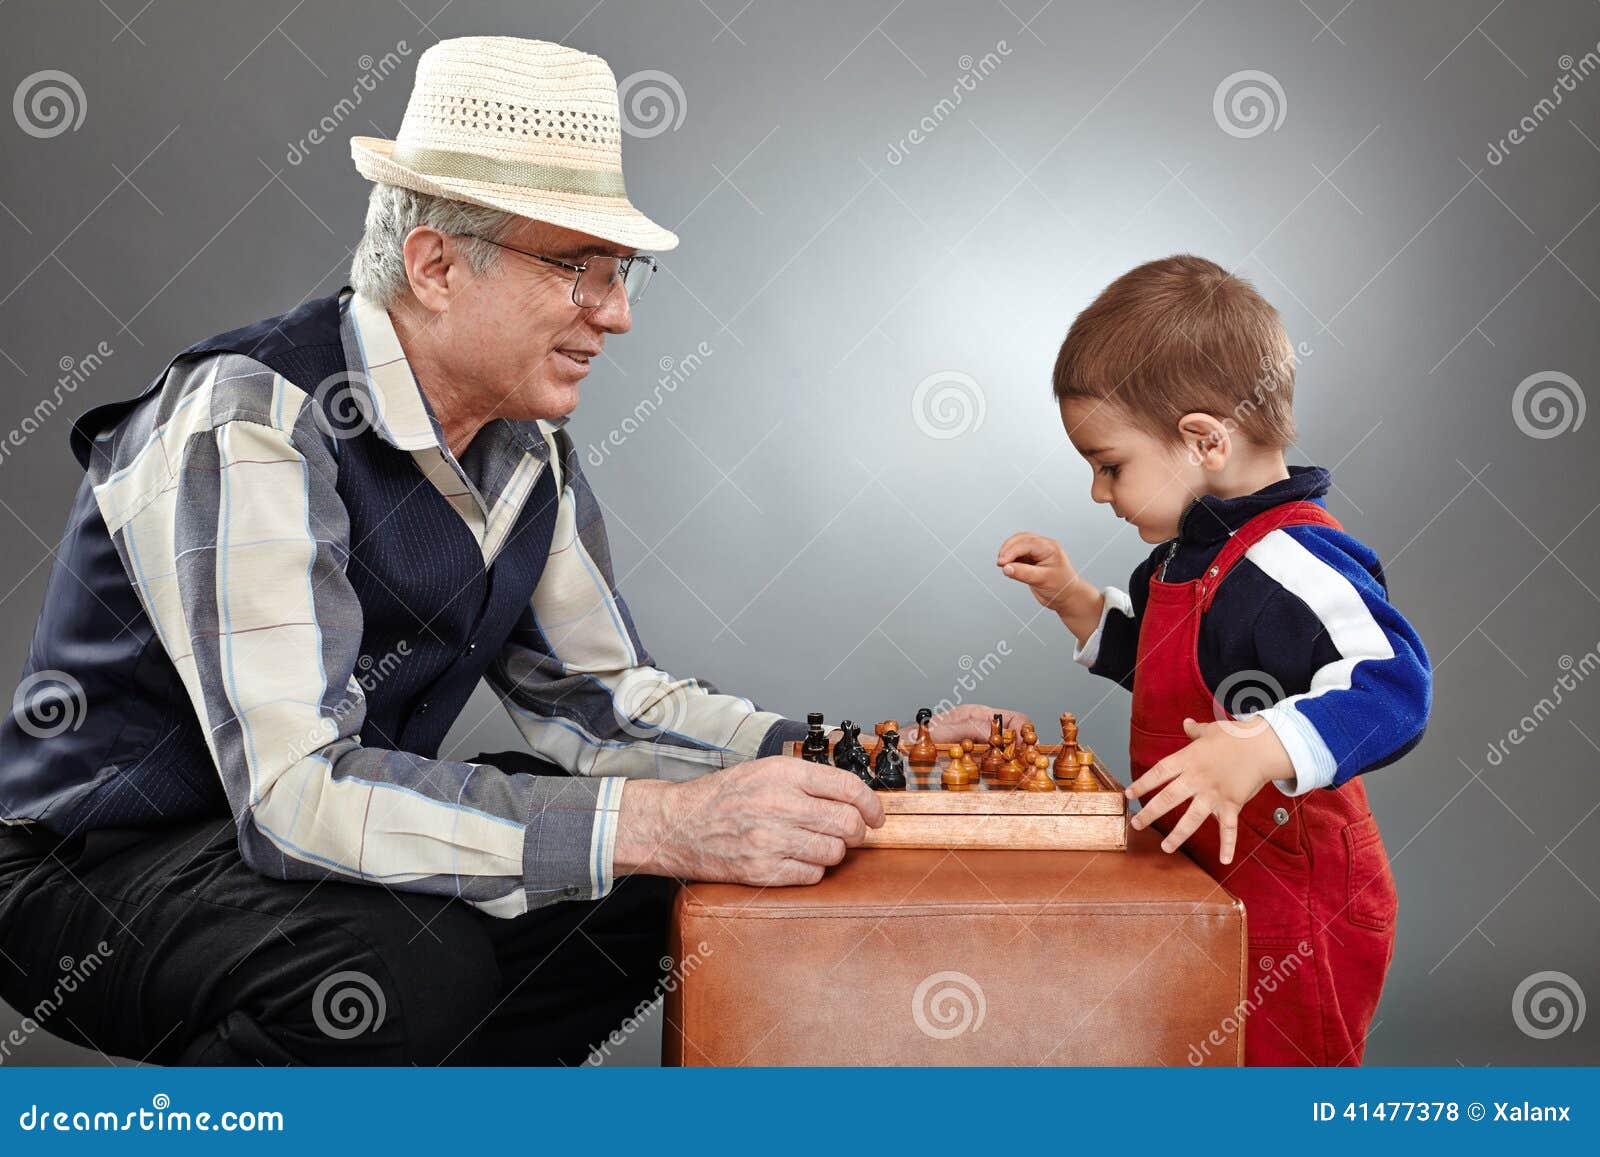 Дед с внуком играют в шашки. Дед играет с внуком. Дедушка с внуком играют в шахматы рисунок. Дедушка играет в шахматы картинка для детей.